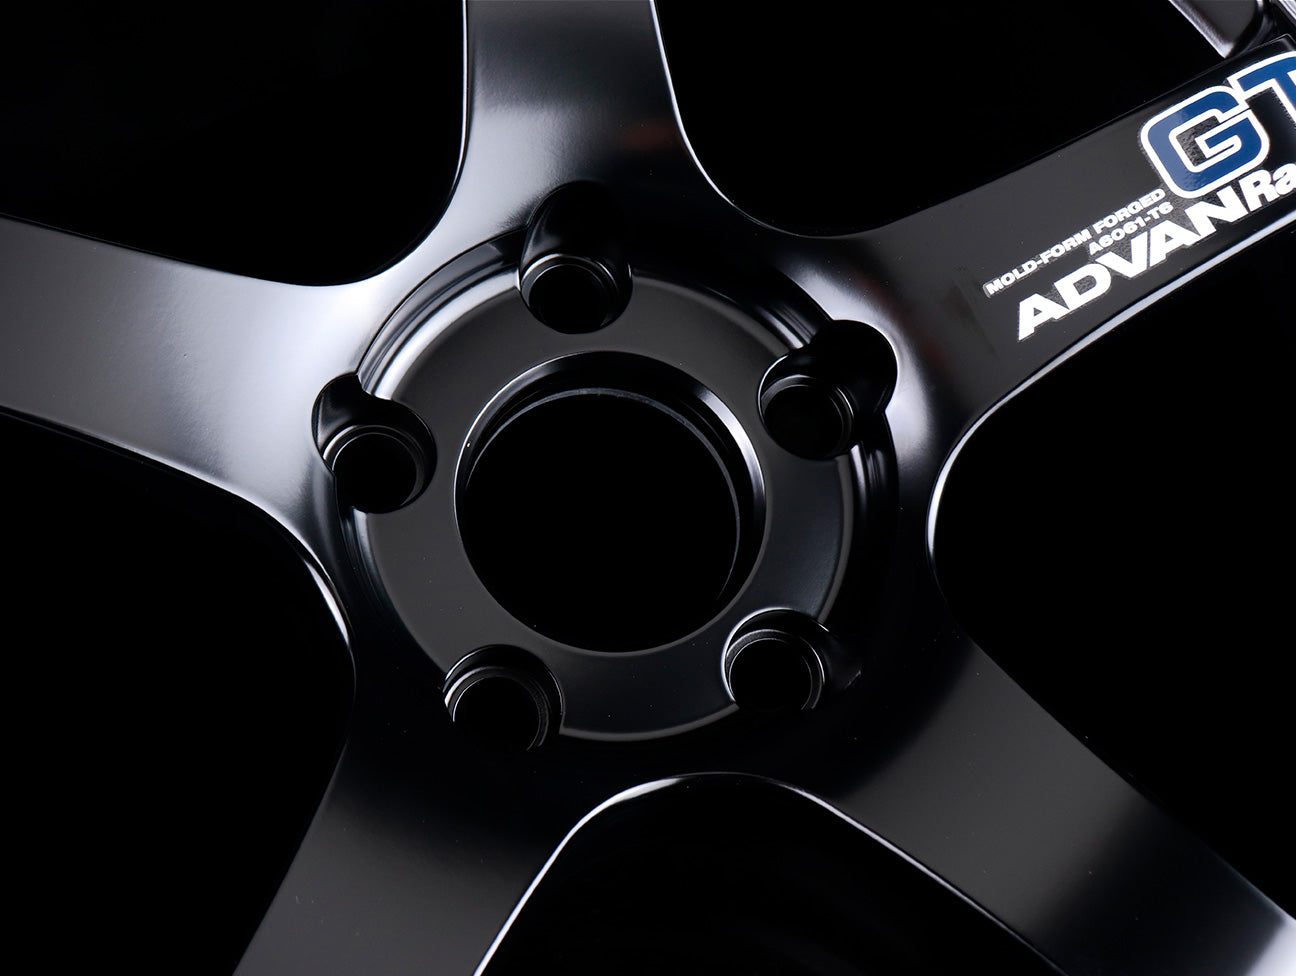 Advan Racing GT Wheels - Semi Gloss Black / 18x9.5 / 5x120 / +35